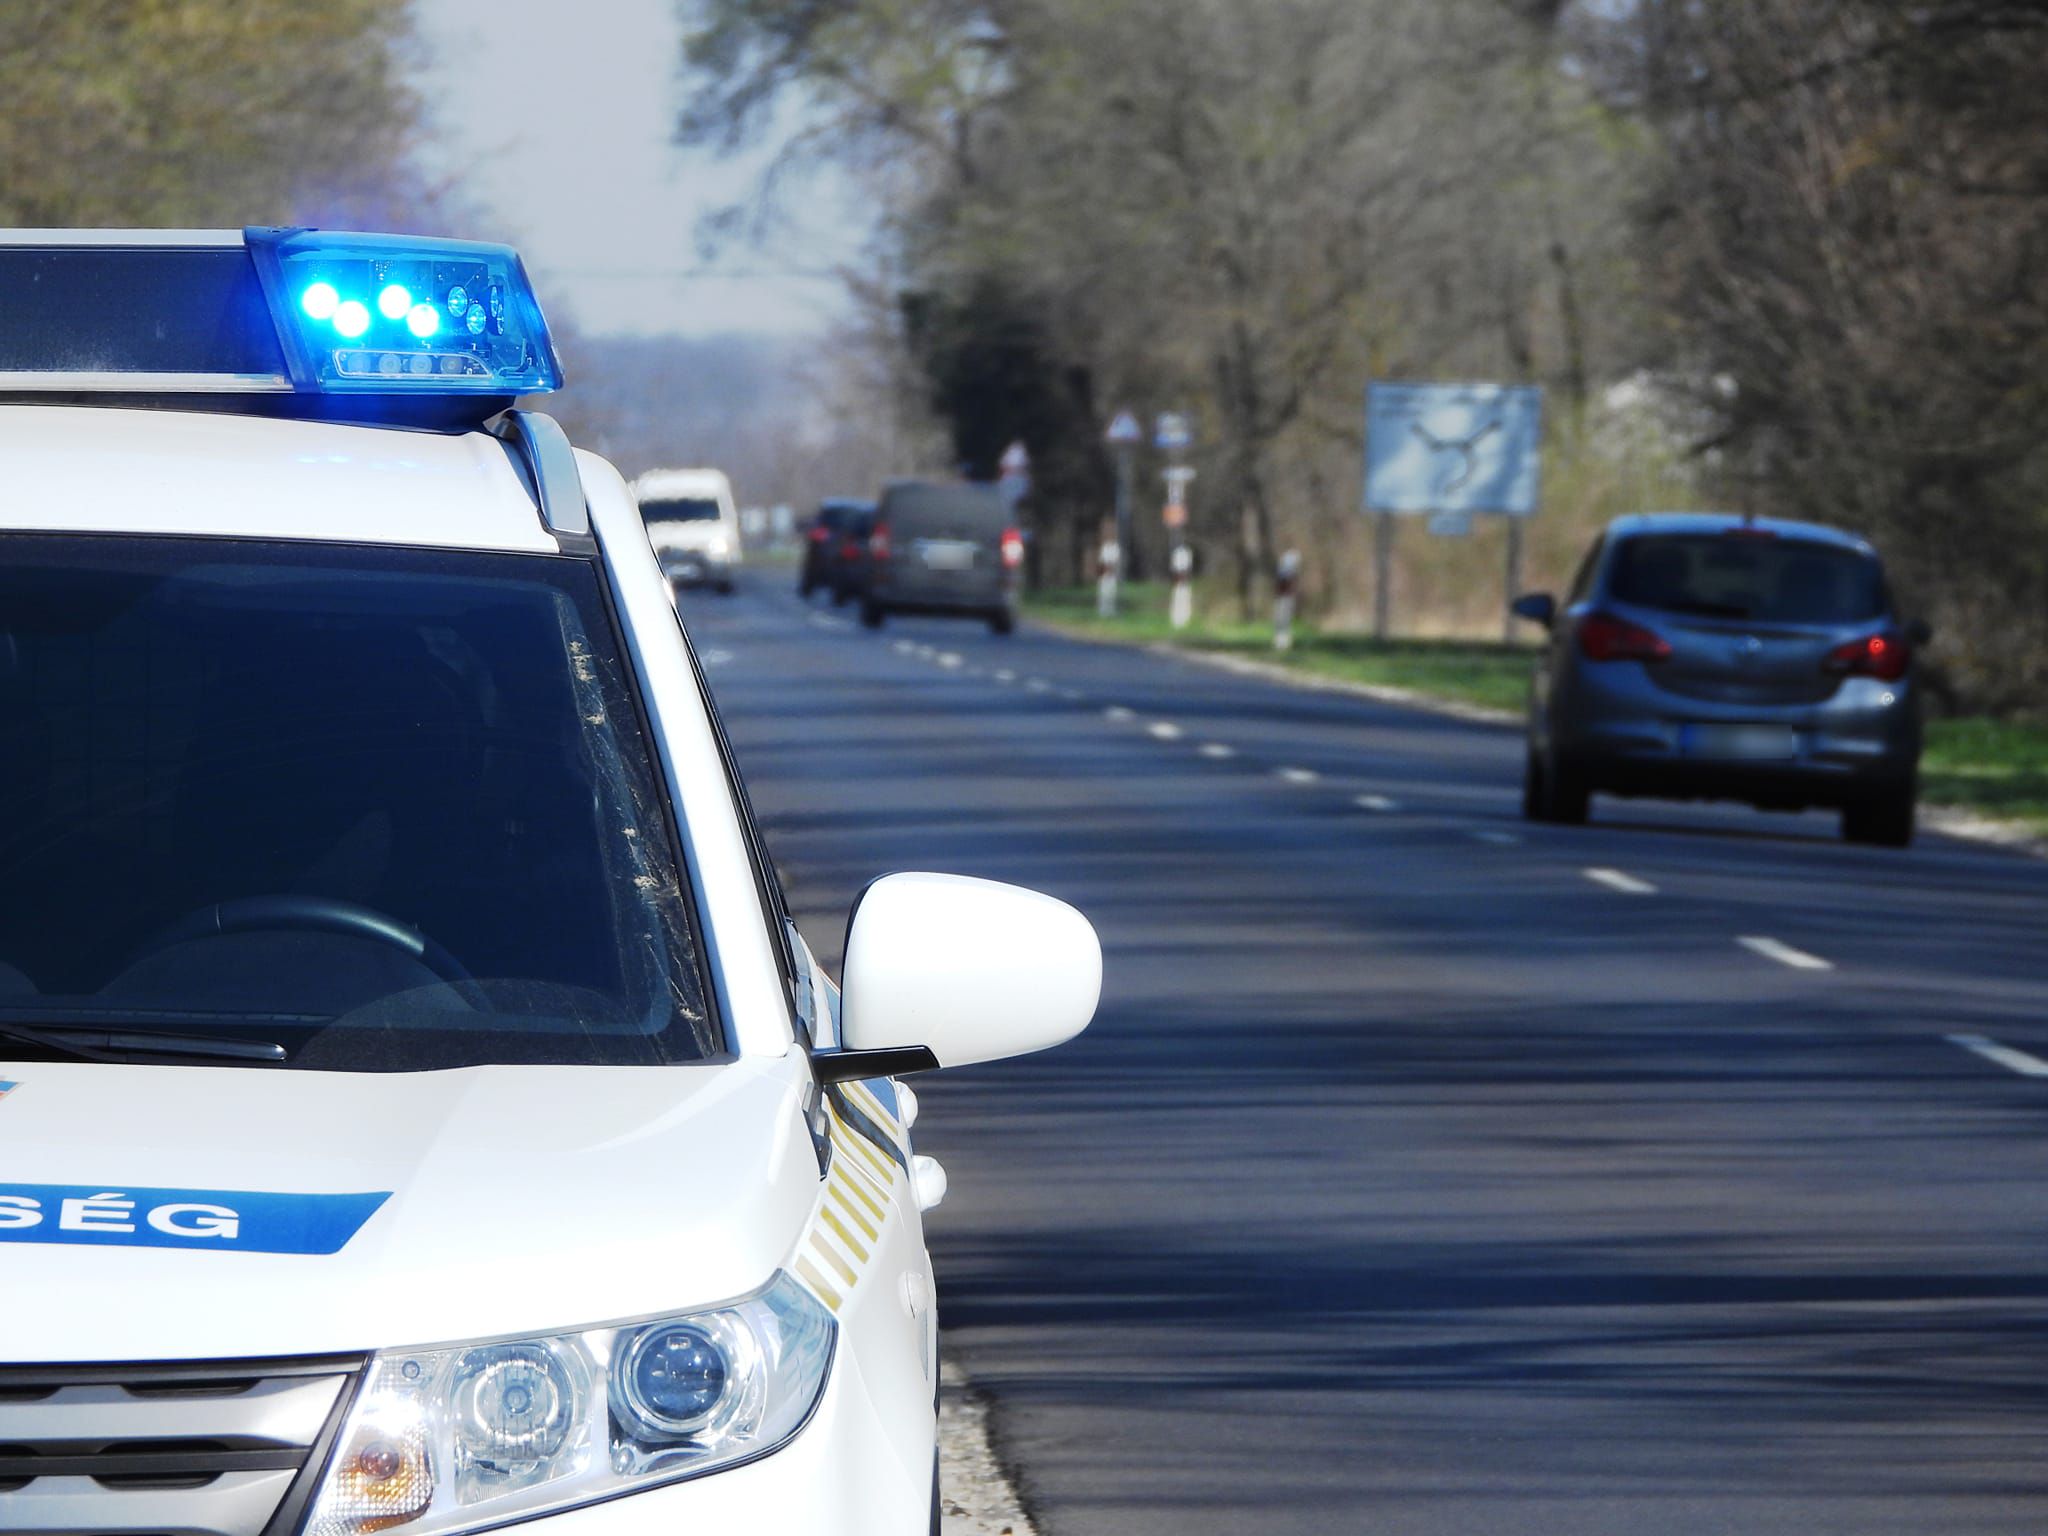 A nyíregyházi rendőrségen ért véget a kocsikázás